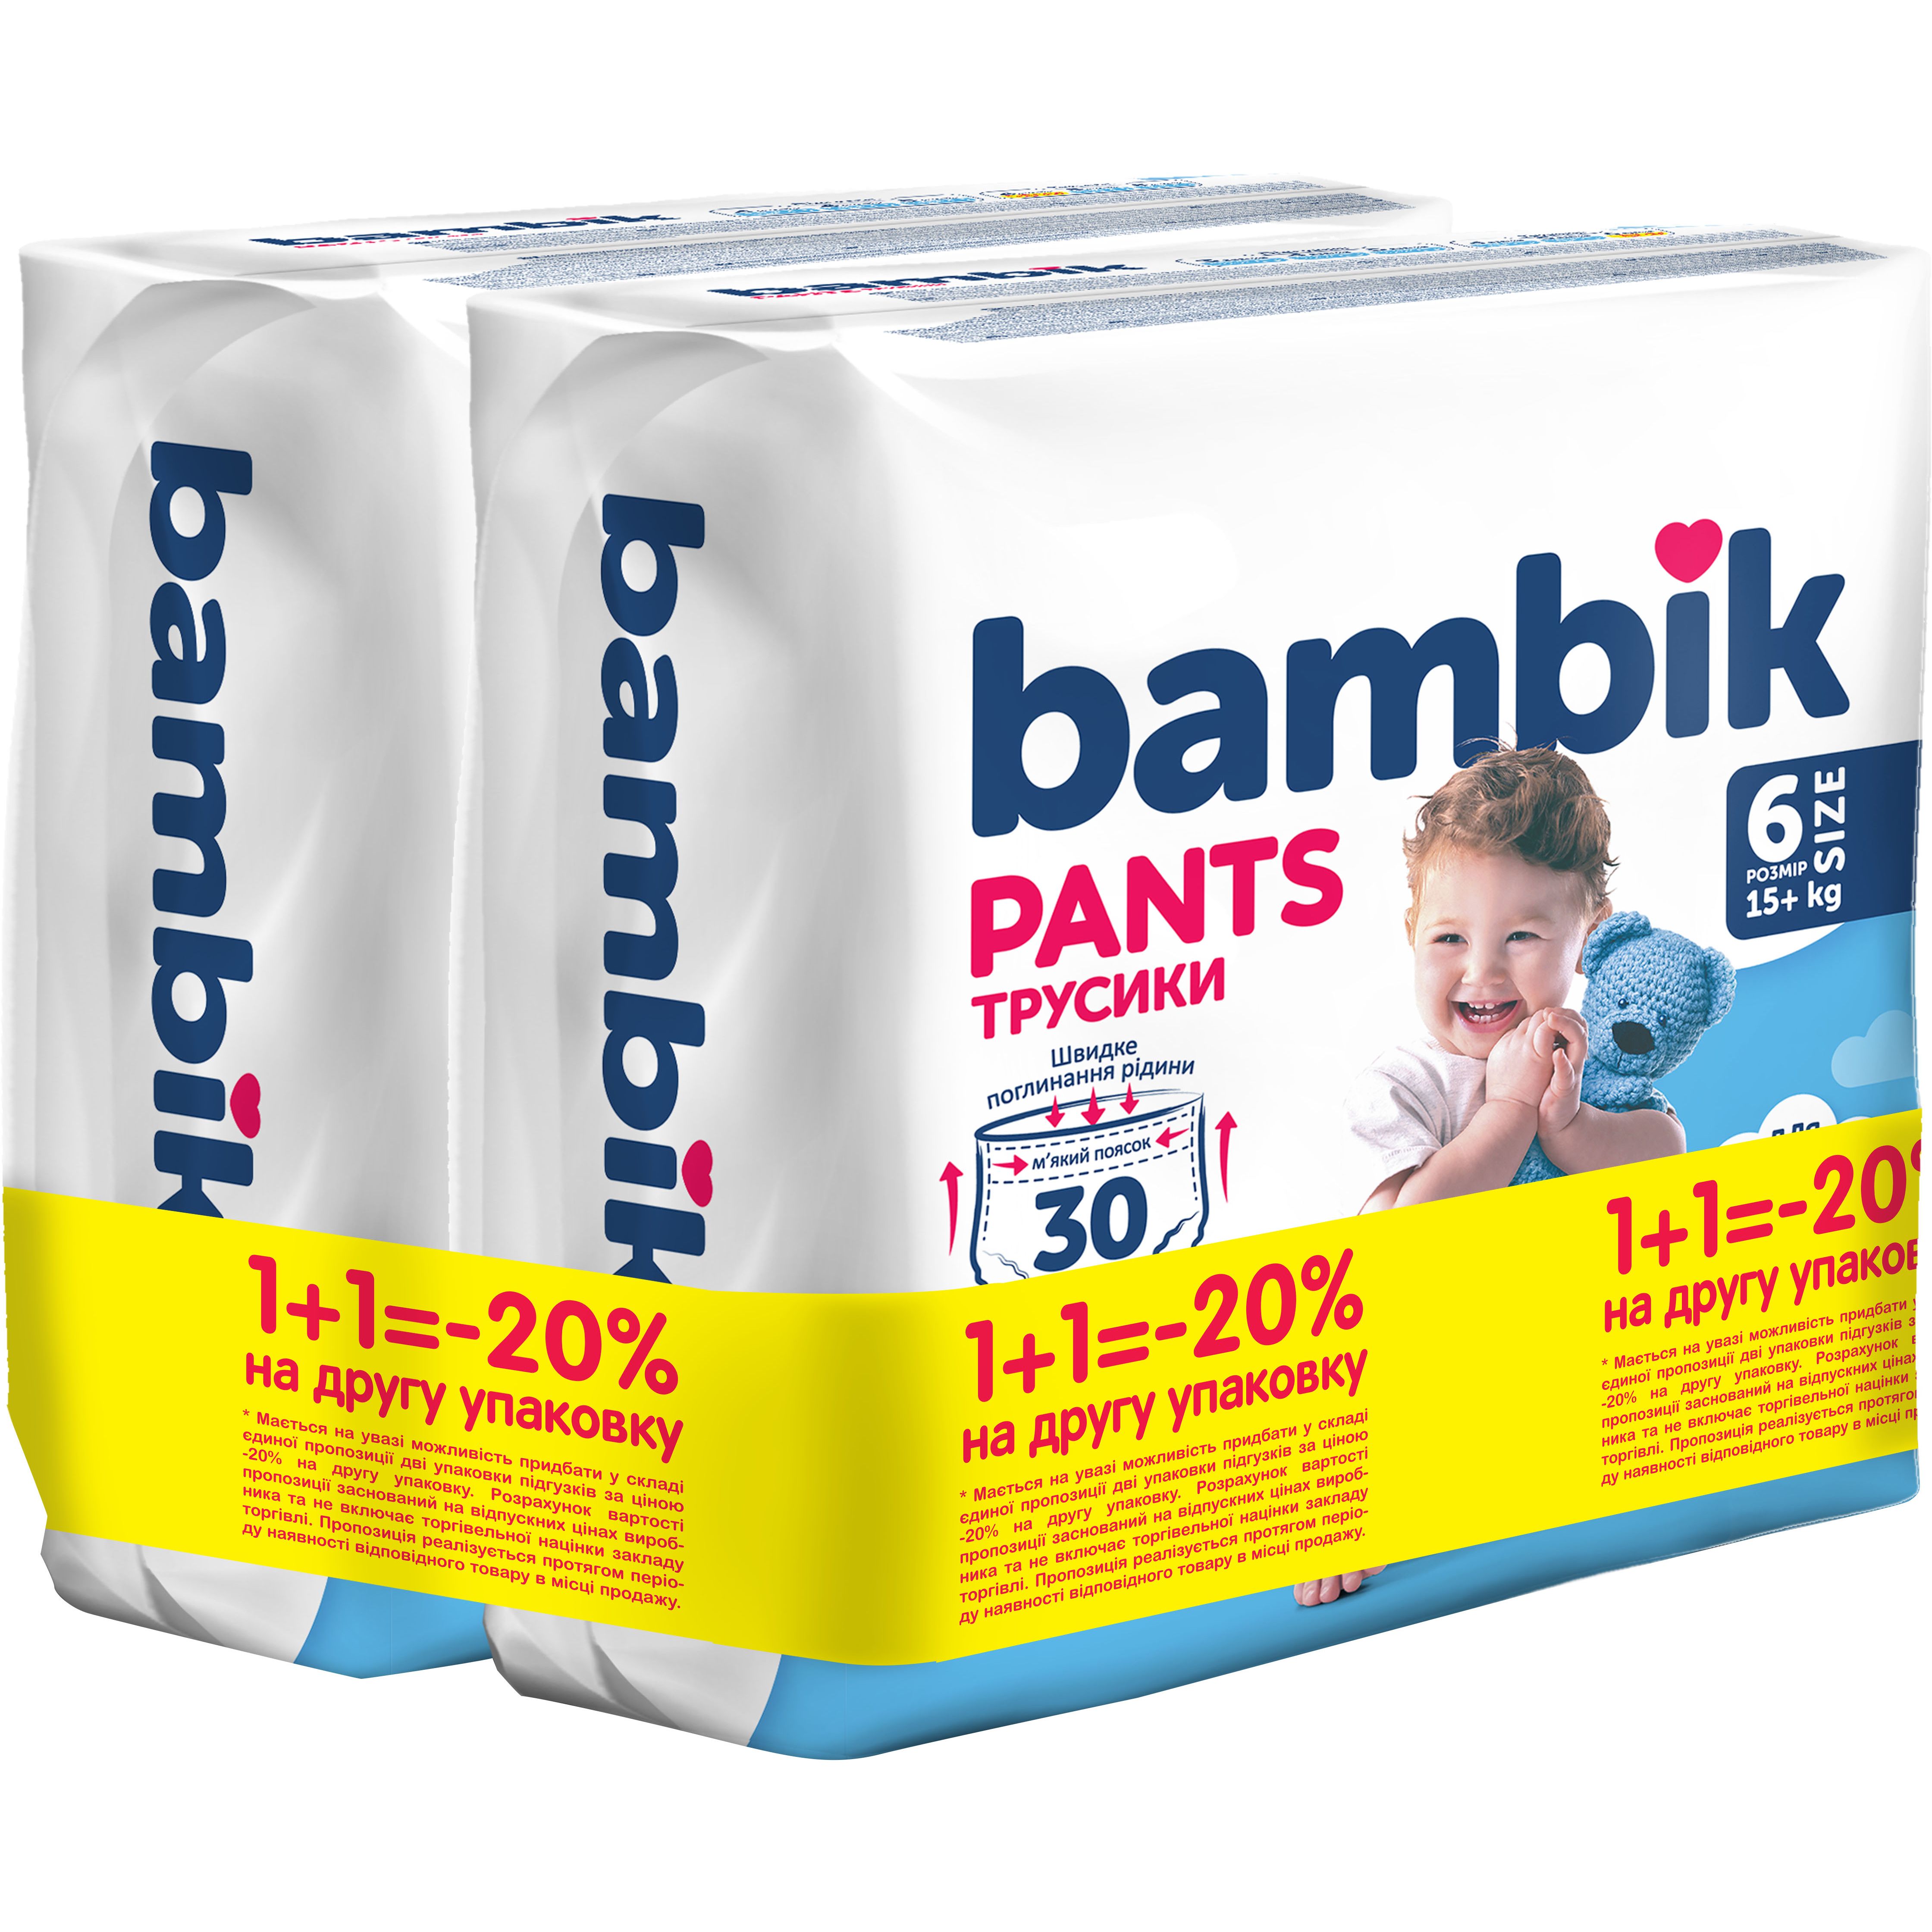 Подгузники-трусики детские Bambik одноразовые 6 (15+ кг), 60 шт. (2 уп. х 30 шт.) - фото 1